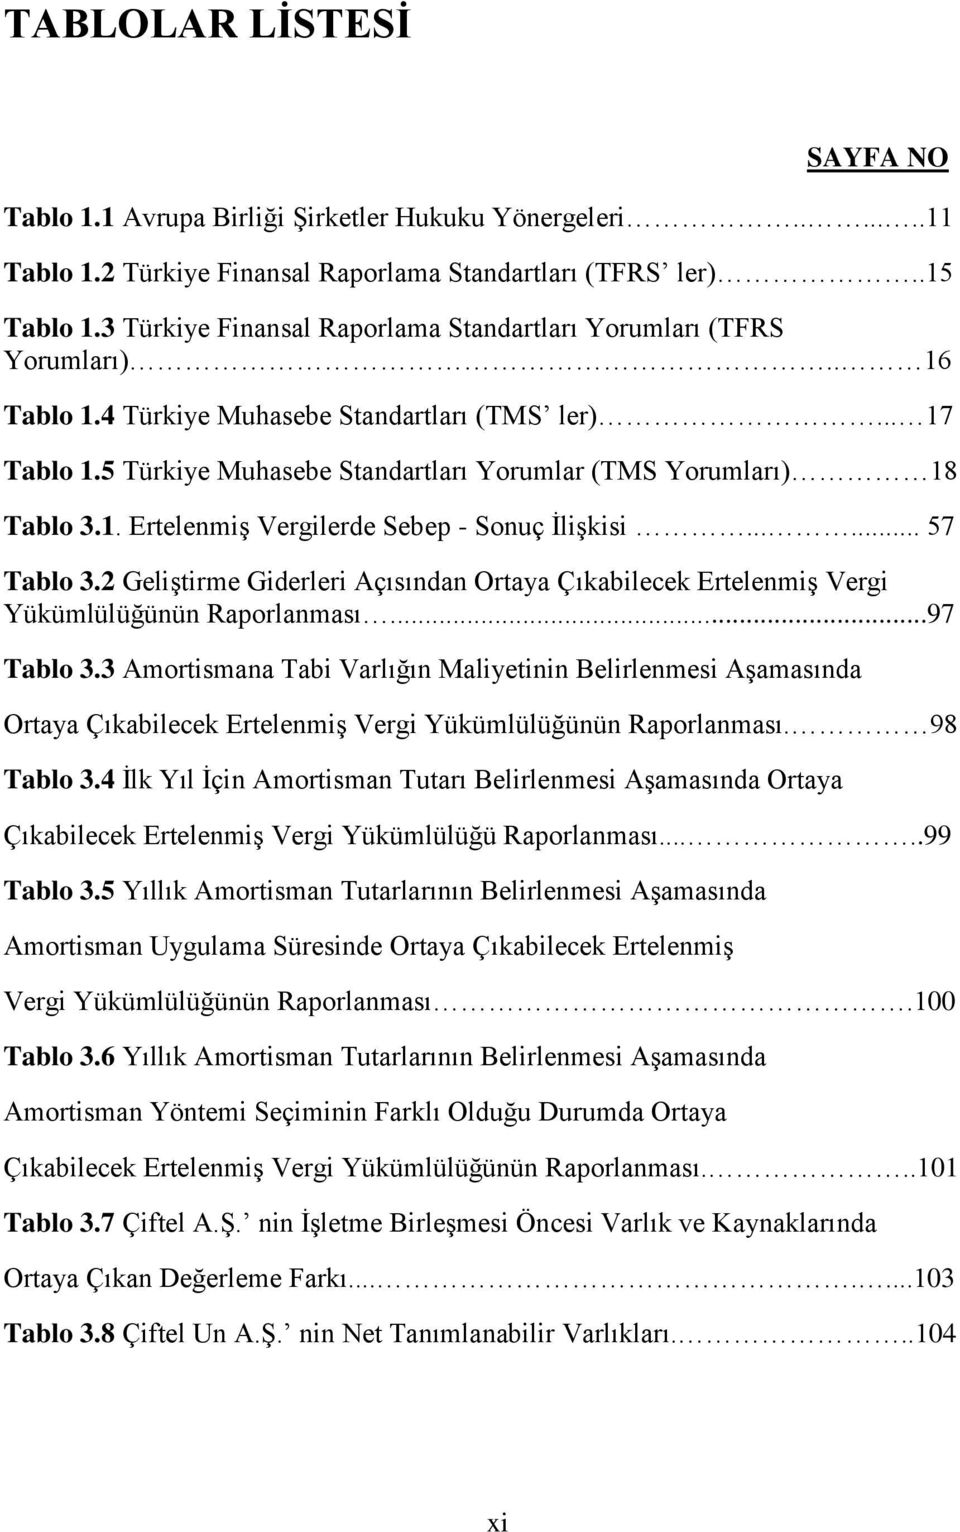 5 Türkiye Muhasebe Standartları Yorumlar (TMS Yorumları) 18 Tablo 3.1. Ertelenmiş Vergilerde Sebep - Sonuç İlişkisi...... 57 Tablo 3.